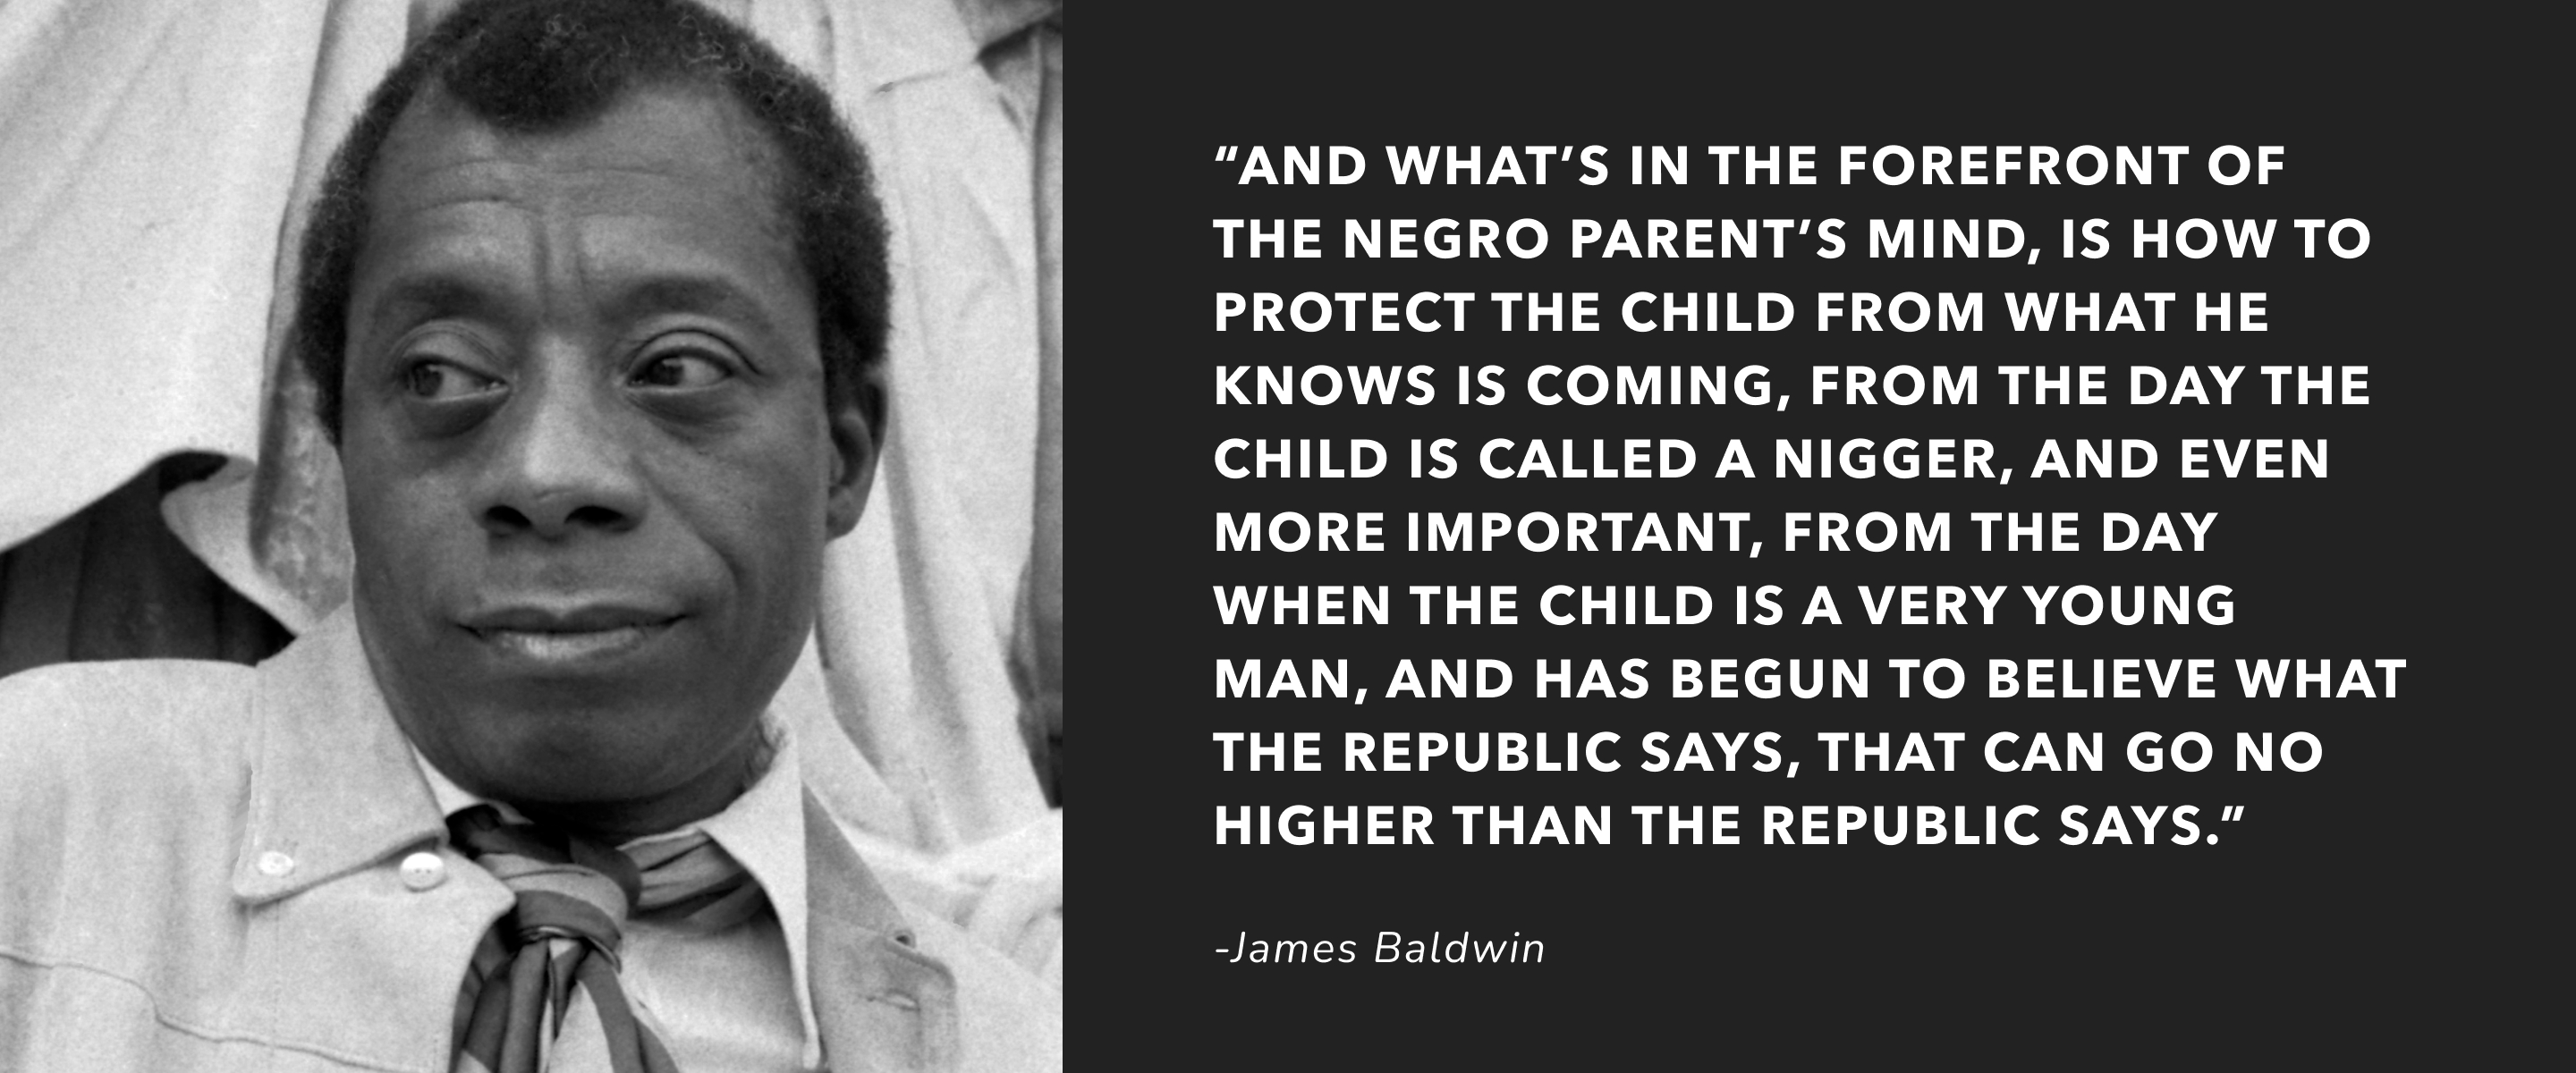 James Baldwin at Berkeley, 5/17/1963